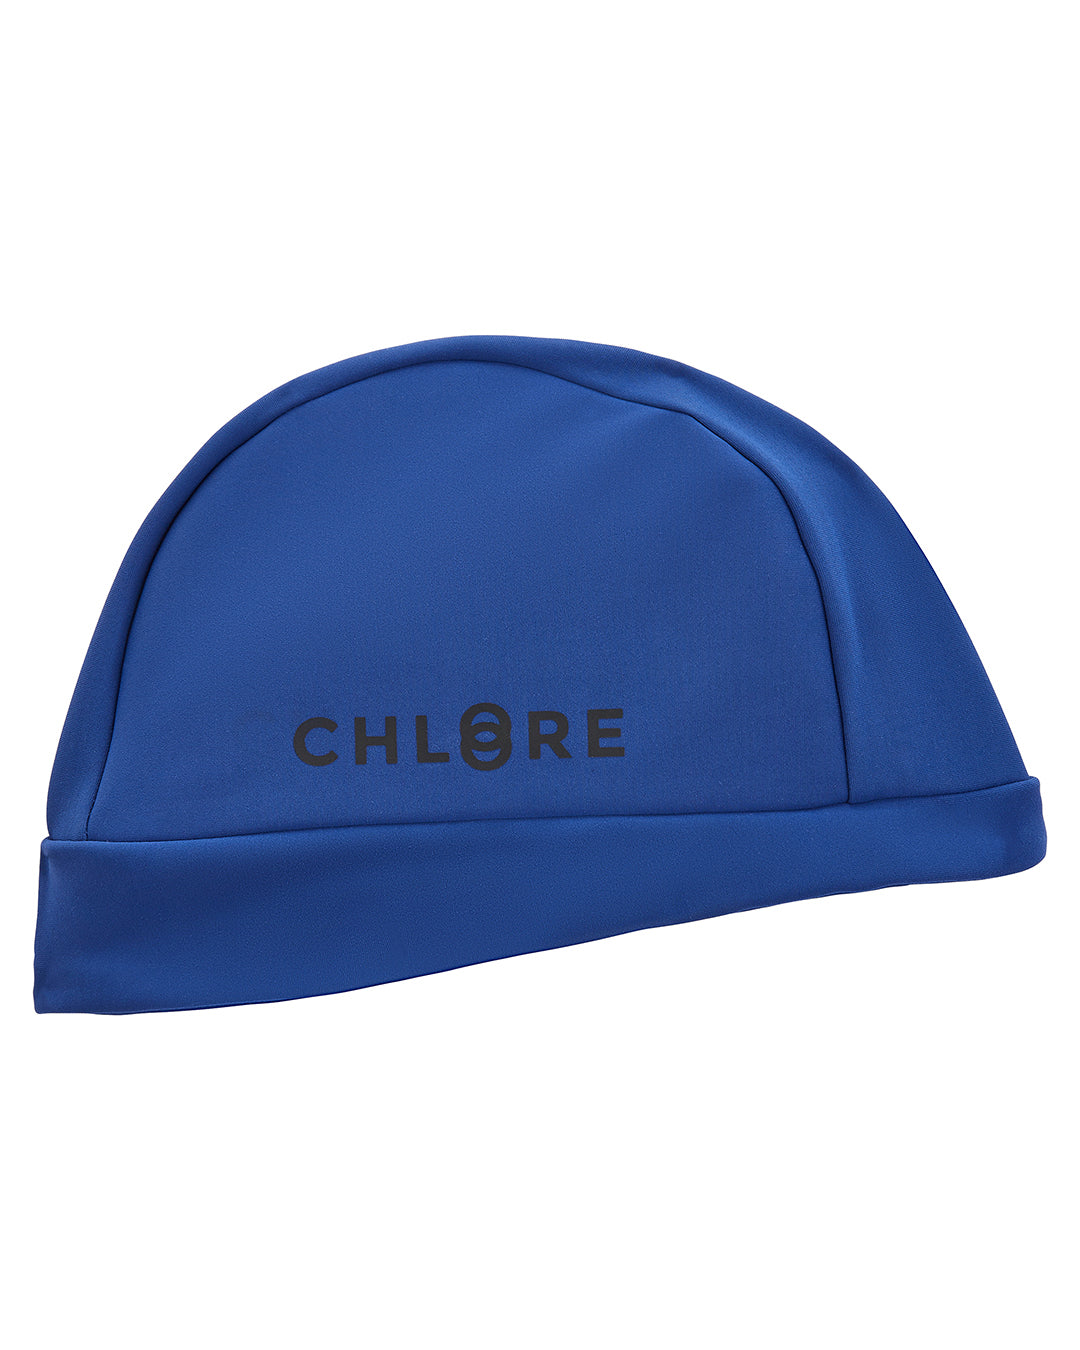 chlore-swimwear-accessoire-natation-bonny-bonnet-entrainement-pool